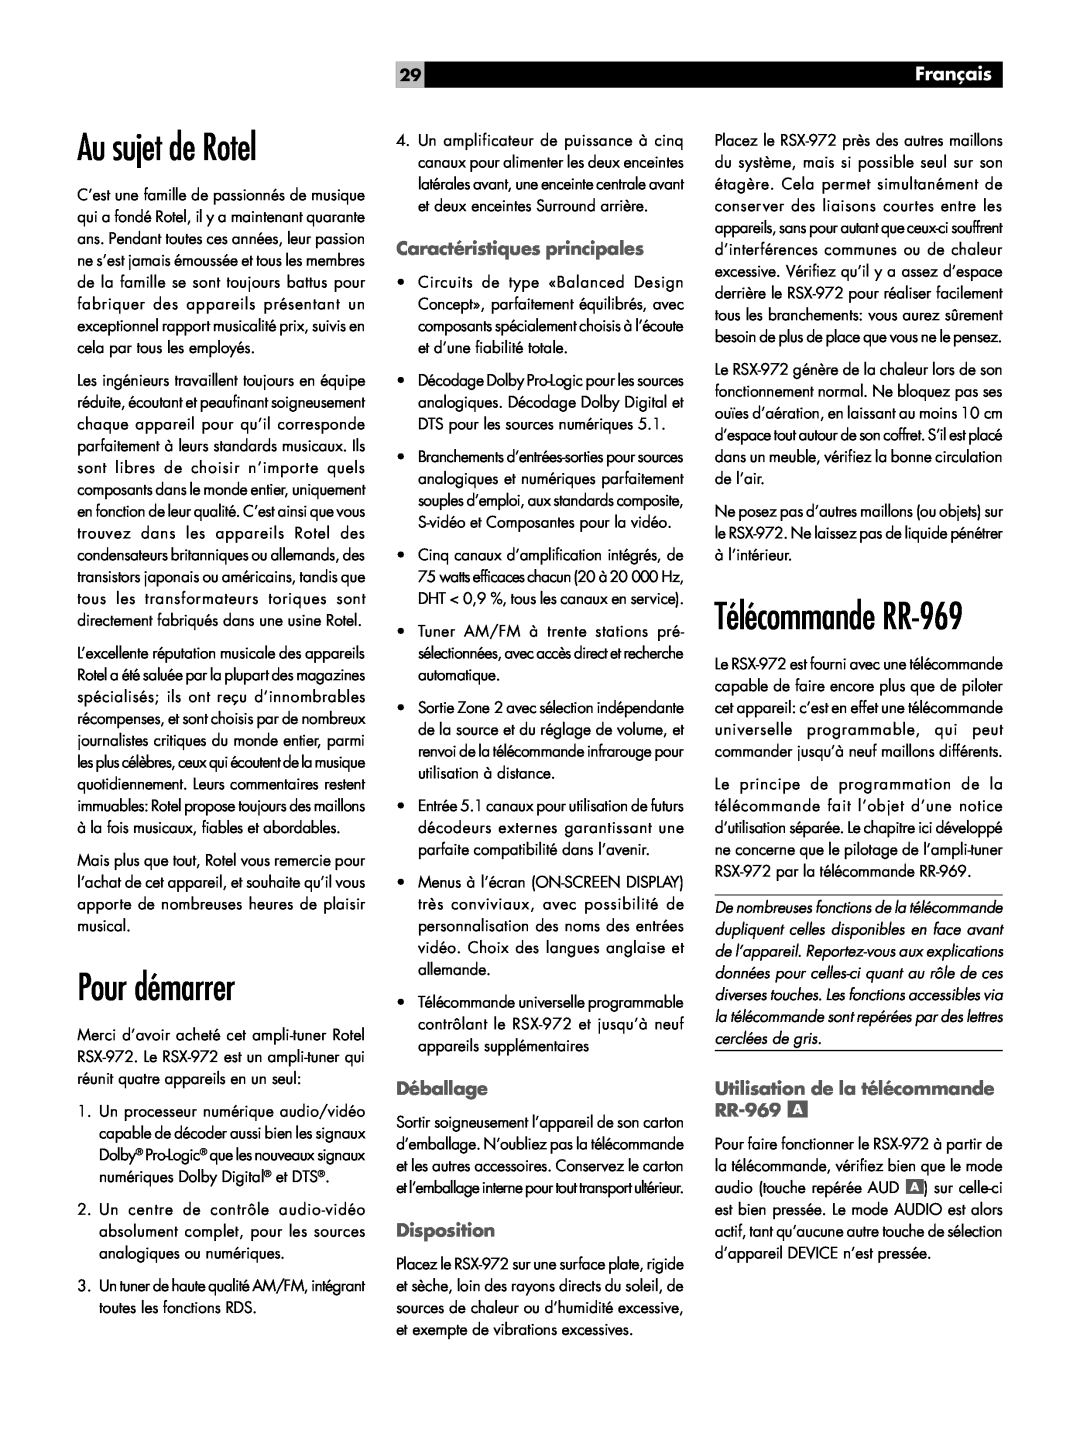 Rotel RSX-972 owner manual Au sujet de Rotel, Pour démarrer, Français, Caractéristiques principales, Déballage, Disposition 